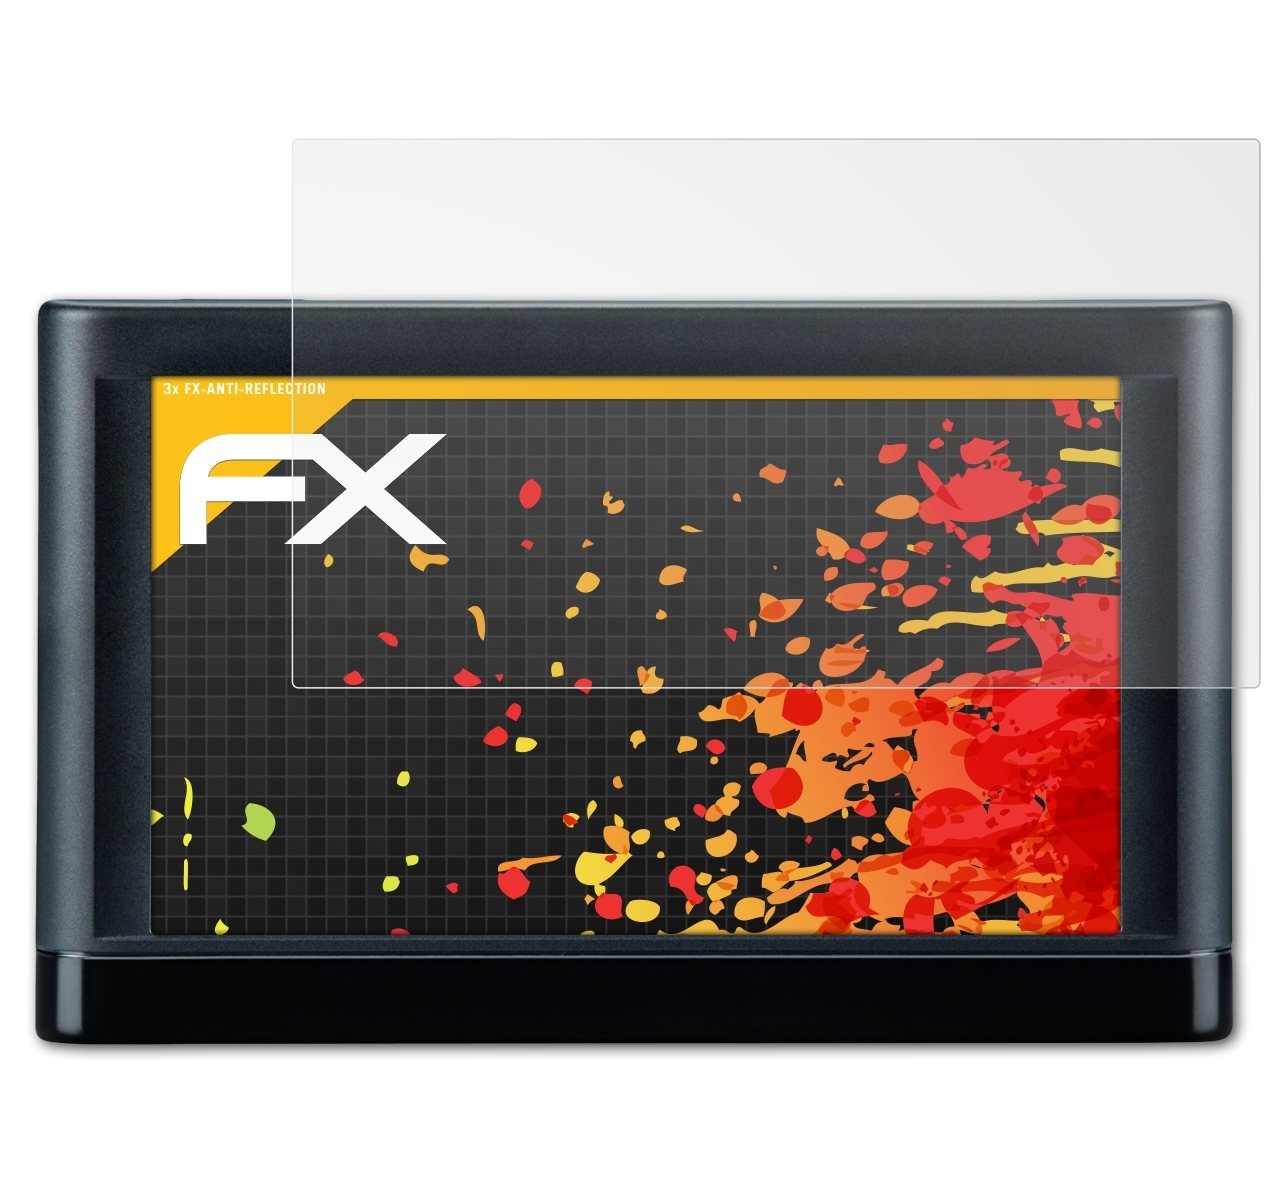 ATFOLIX FX-Antireflex 3x Displayschutz(für Garmin nüvi 56LMT)